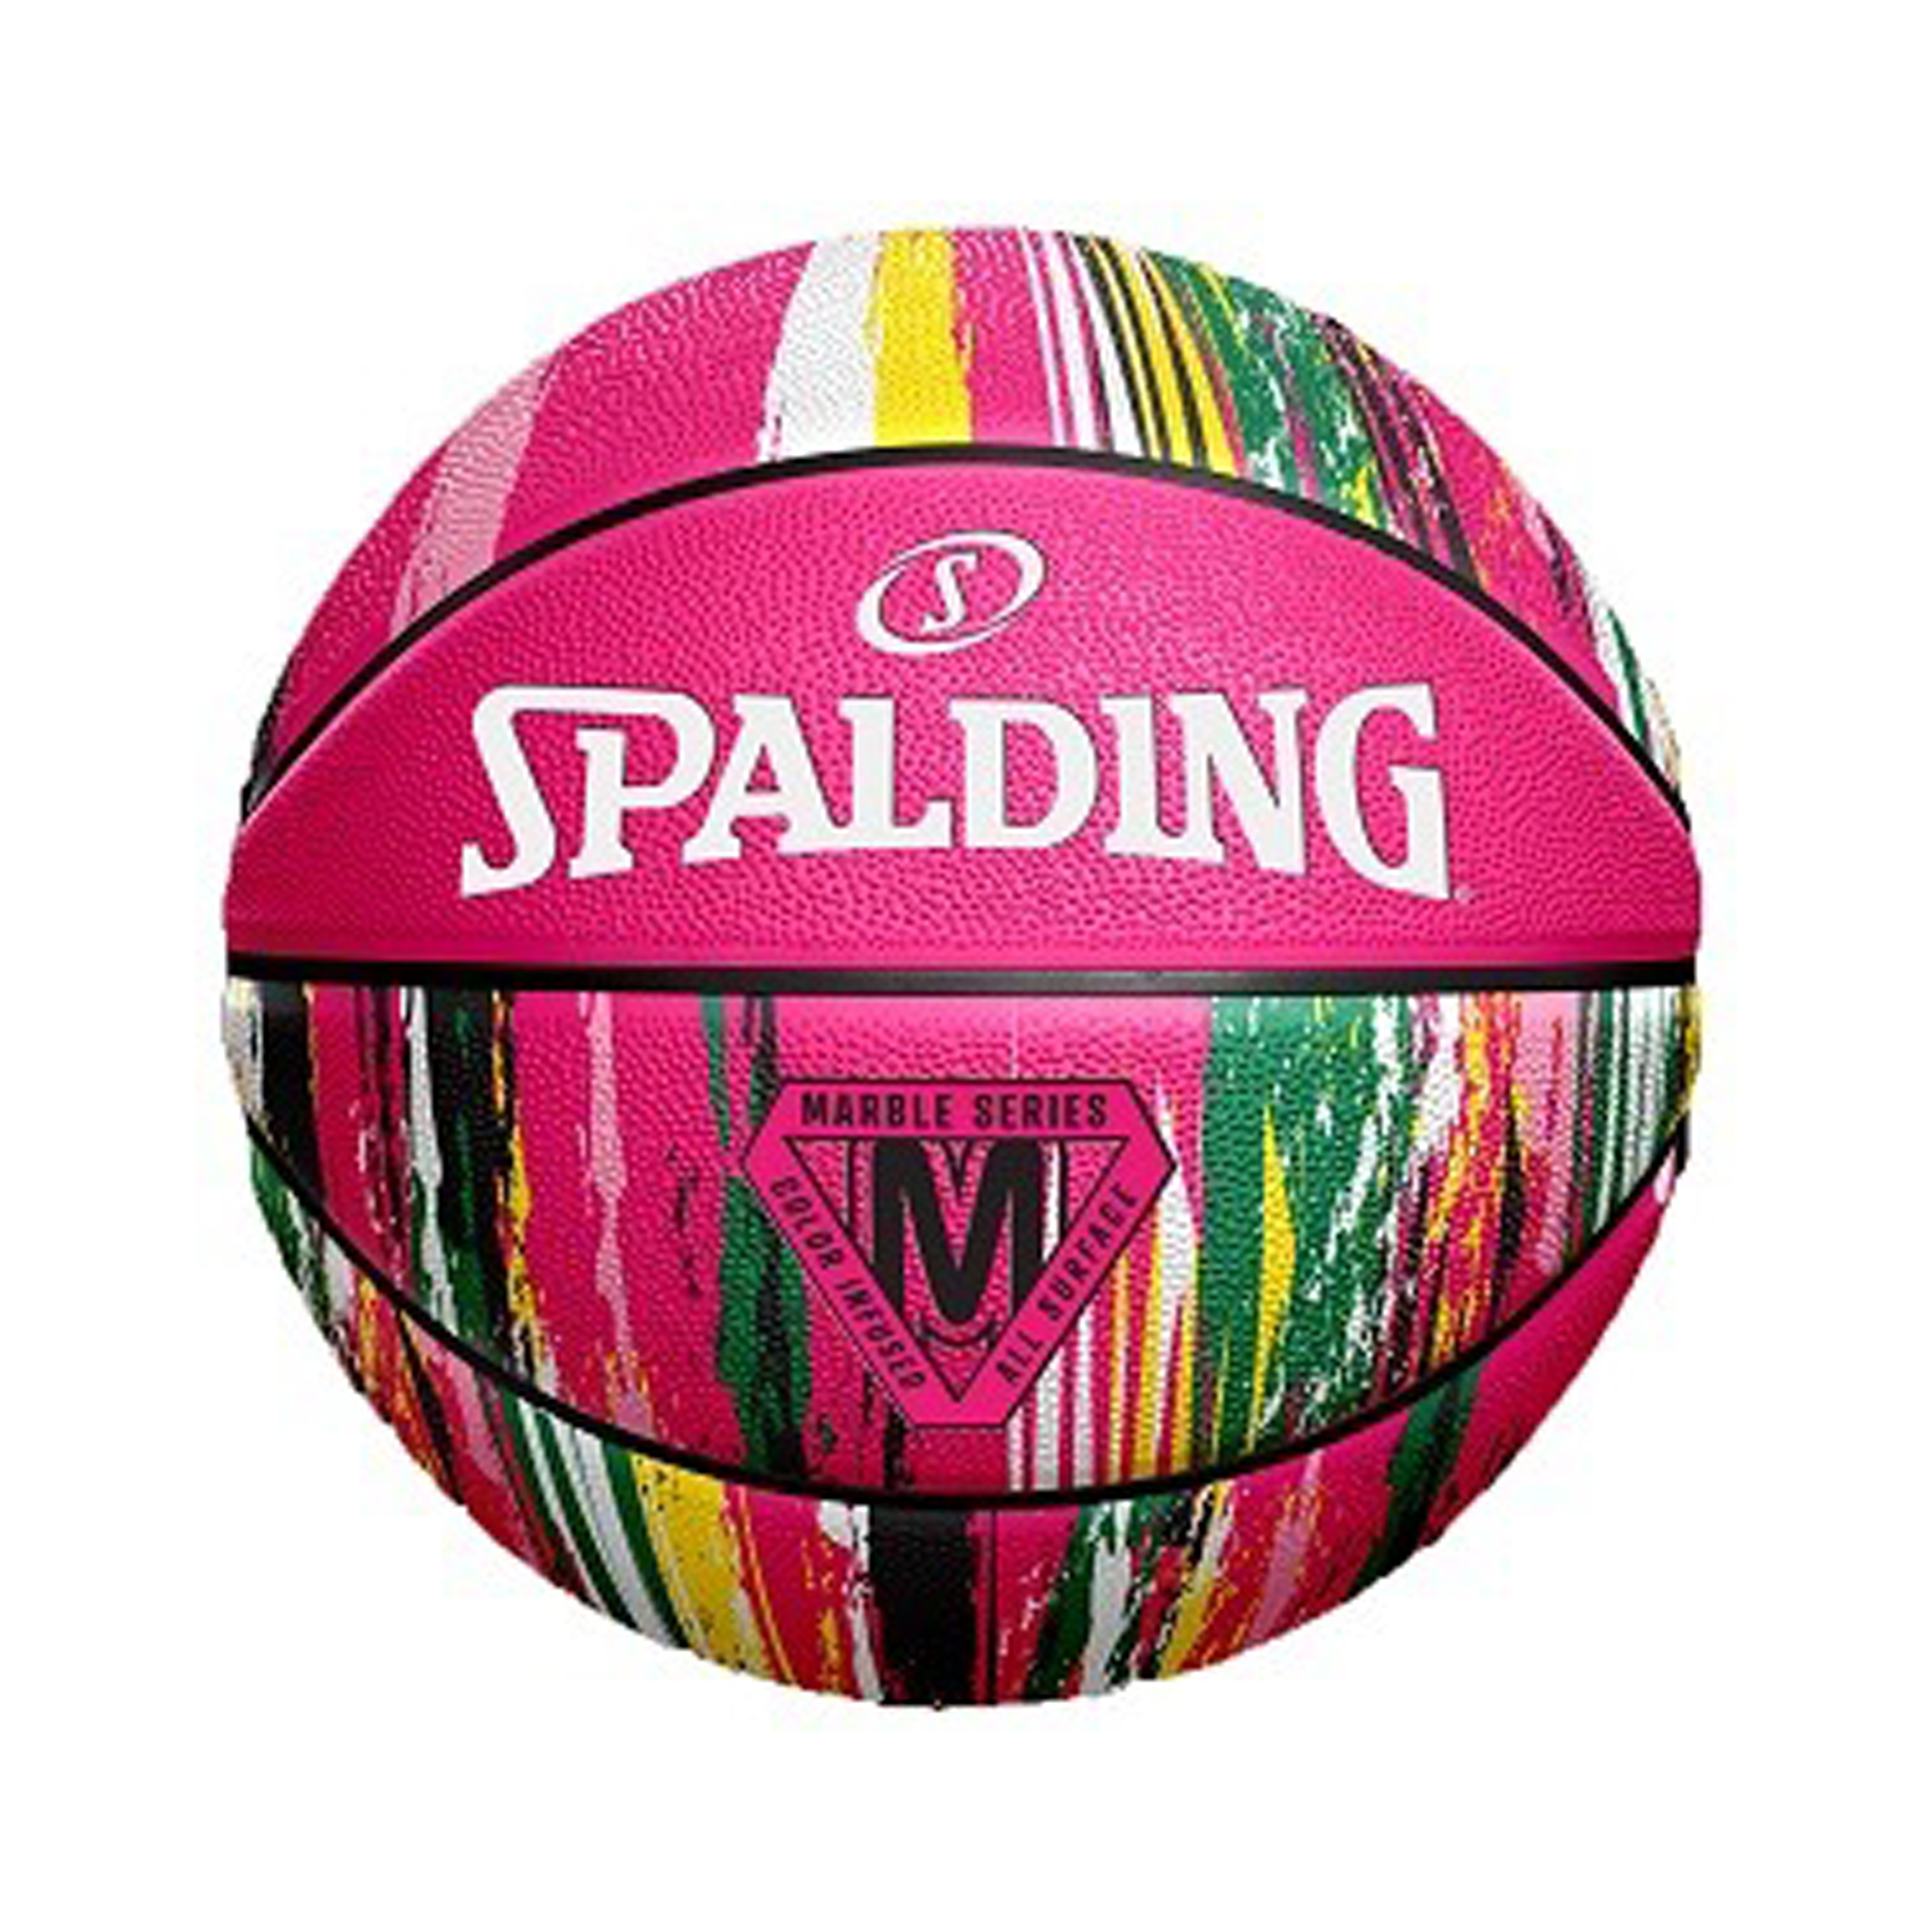 Ballon de Basketball Spalding Marble Outdoor